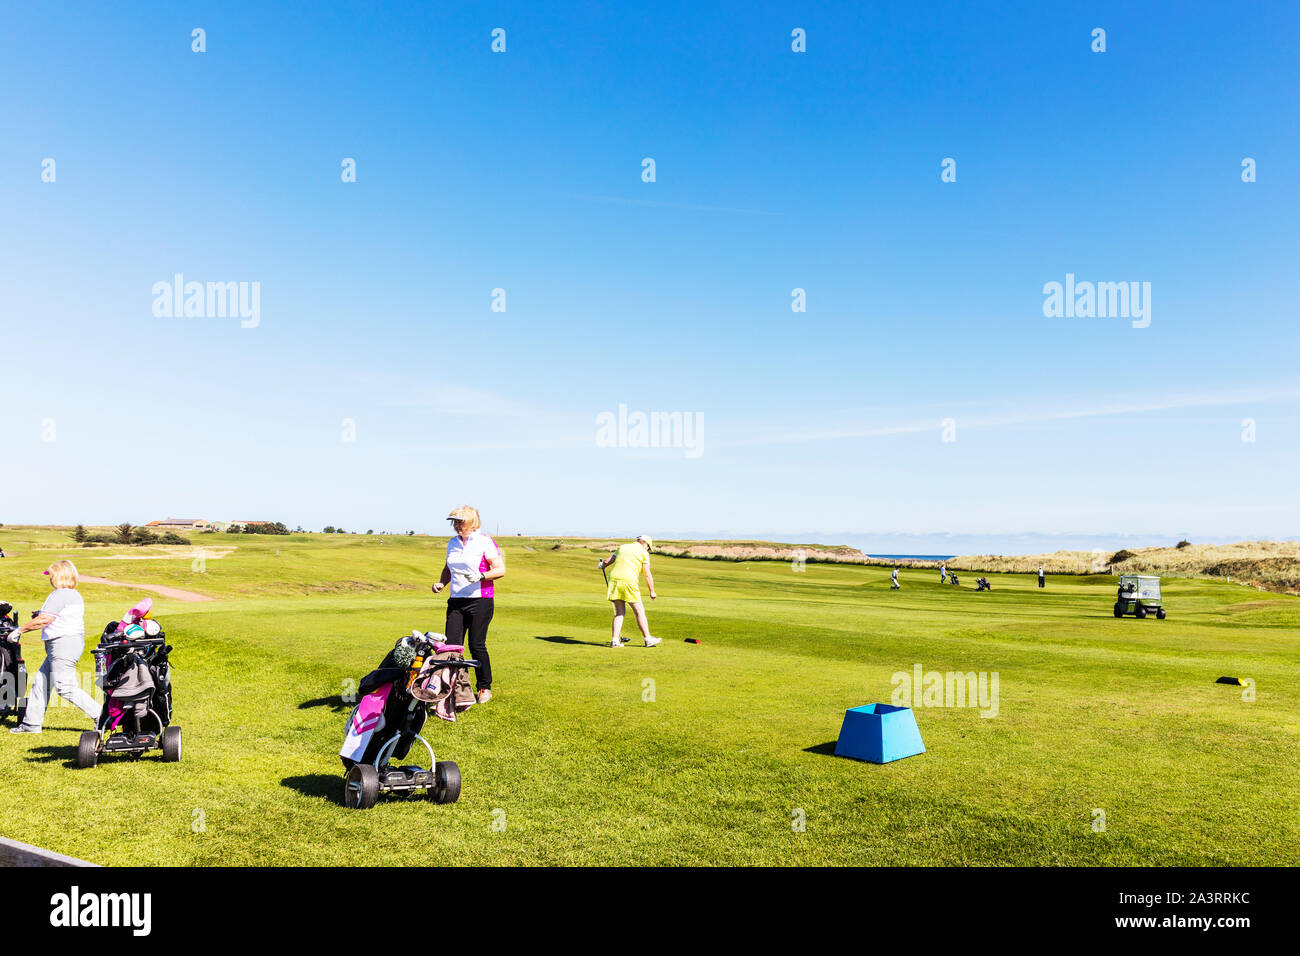 Lady Golf, jugar al golf, las mujeres golfistas, golf, golf, jugadores de golf, señoras, mujeres, jugando, Northumberland, Reino Unido, Inglaterra Foto de stock